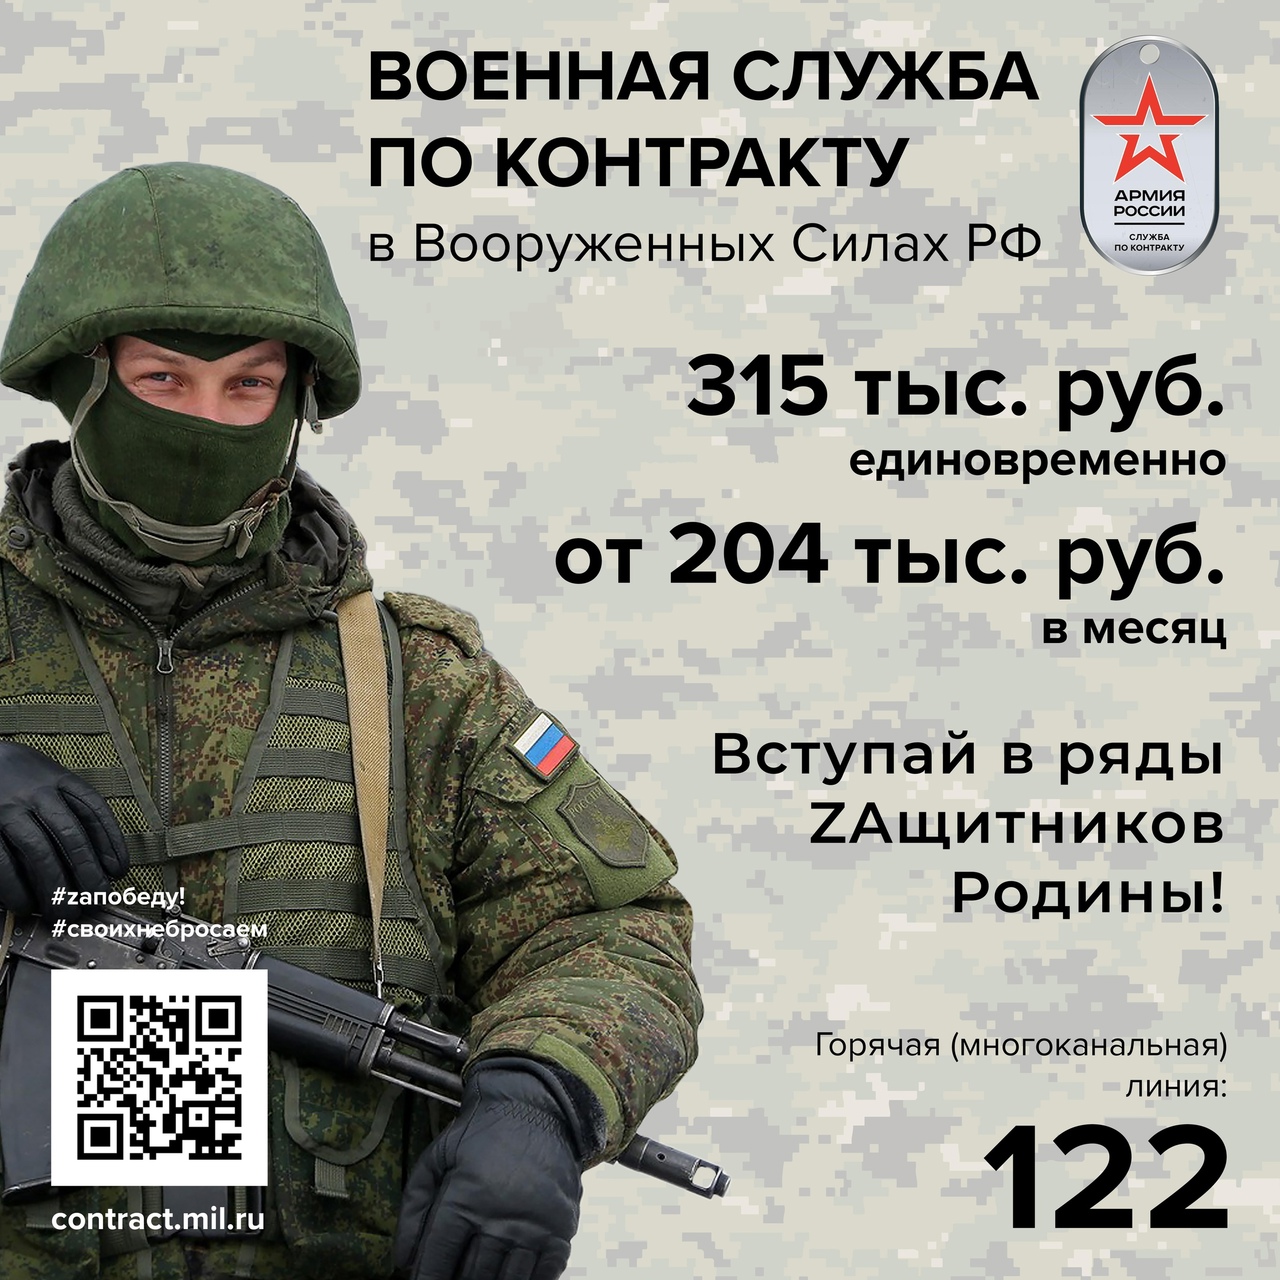 Служба по контракту в Вооруженных Силах Российской Федерации.